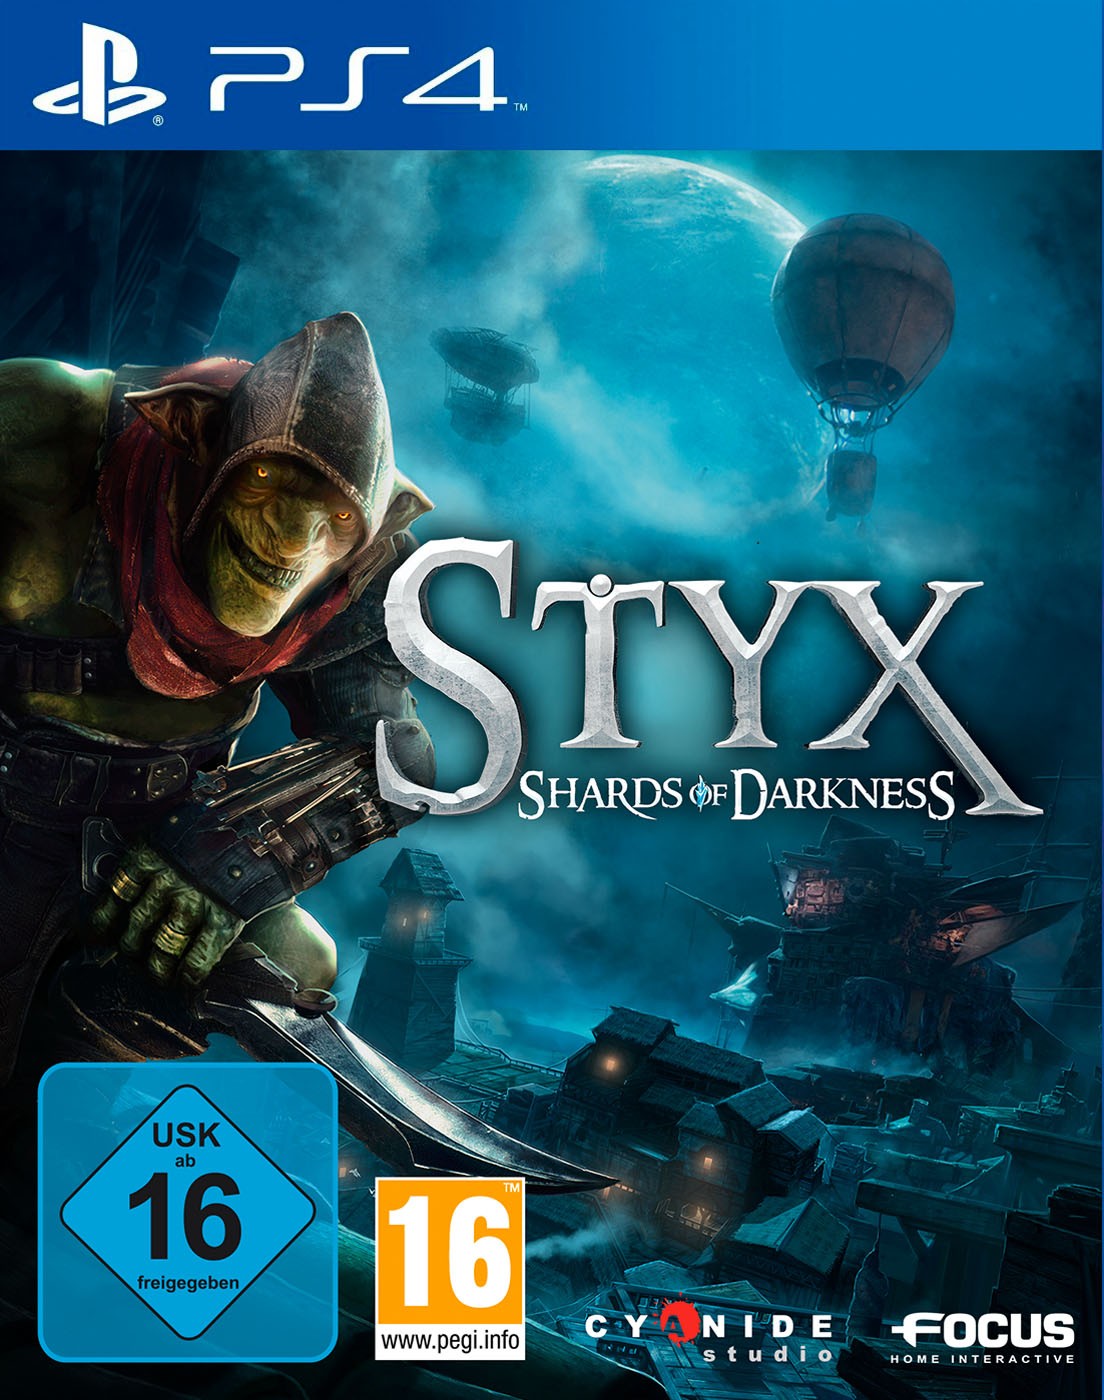 Styx: Shards of Darkness: постер N140137